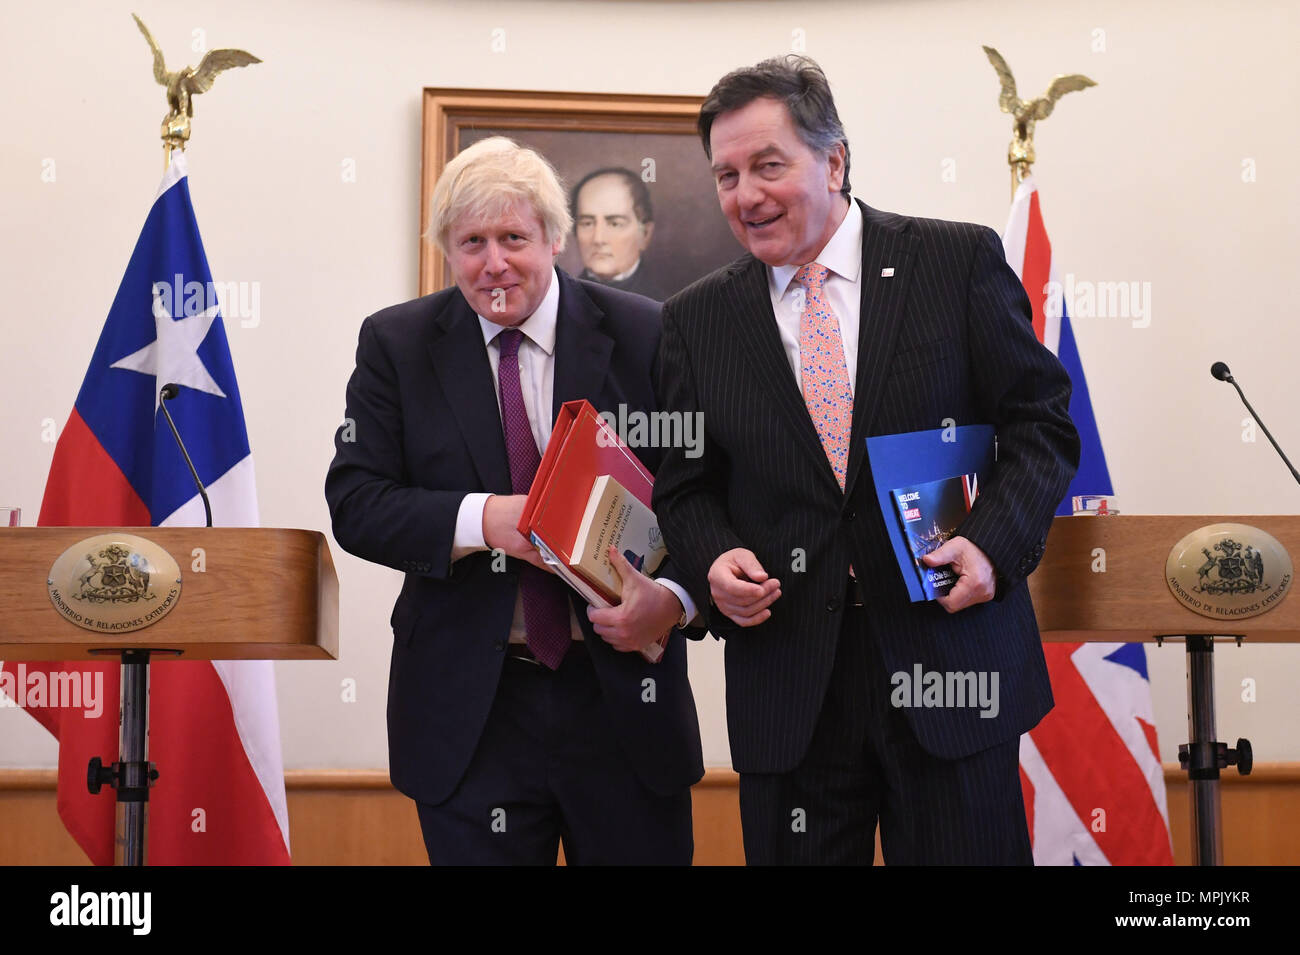 Secrétaire des affaires étrangères, Boris Johnson, après avoir tenu une conférence de presse avec le ministre des affaires étrangères chilien Roberto Ampuero au ministère des Affaires étrangères à Santiago, Chili. Banque D'Images